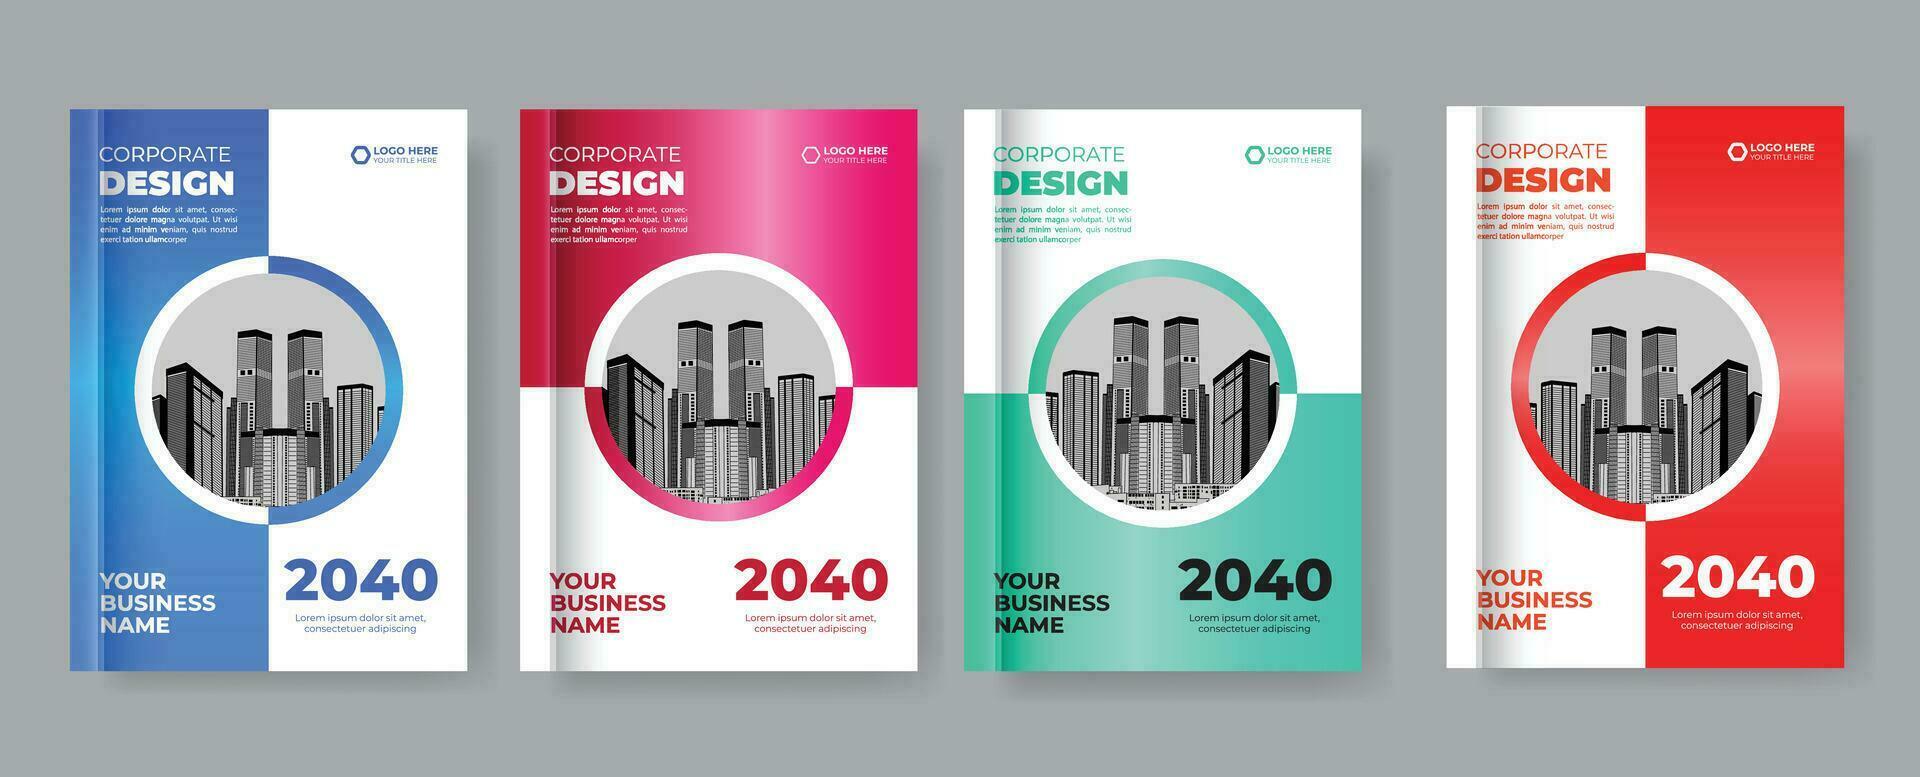 Corporate Cover Design Template in A4, annual report, poster, Corporate, business portfolio, Presentation, magazine cover, cover design set vector